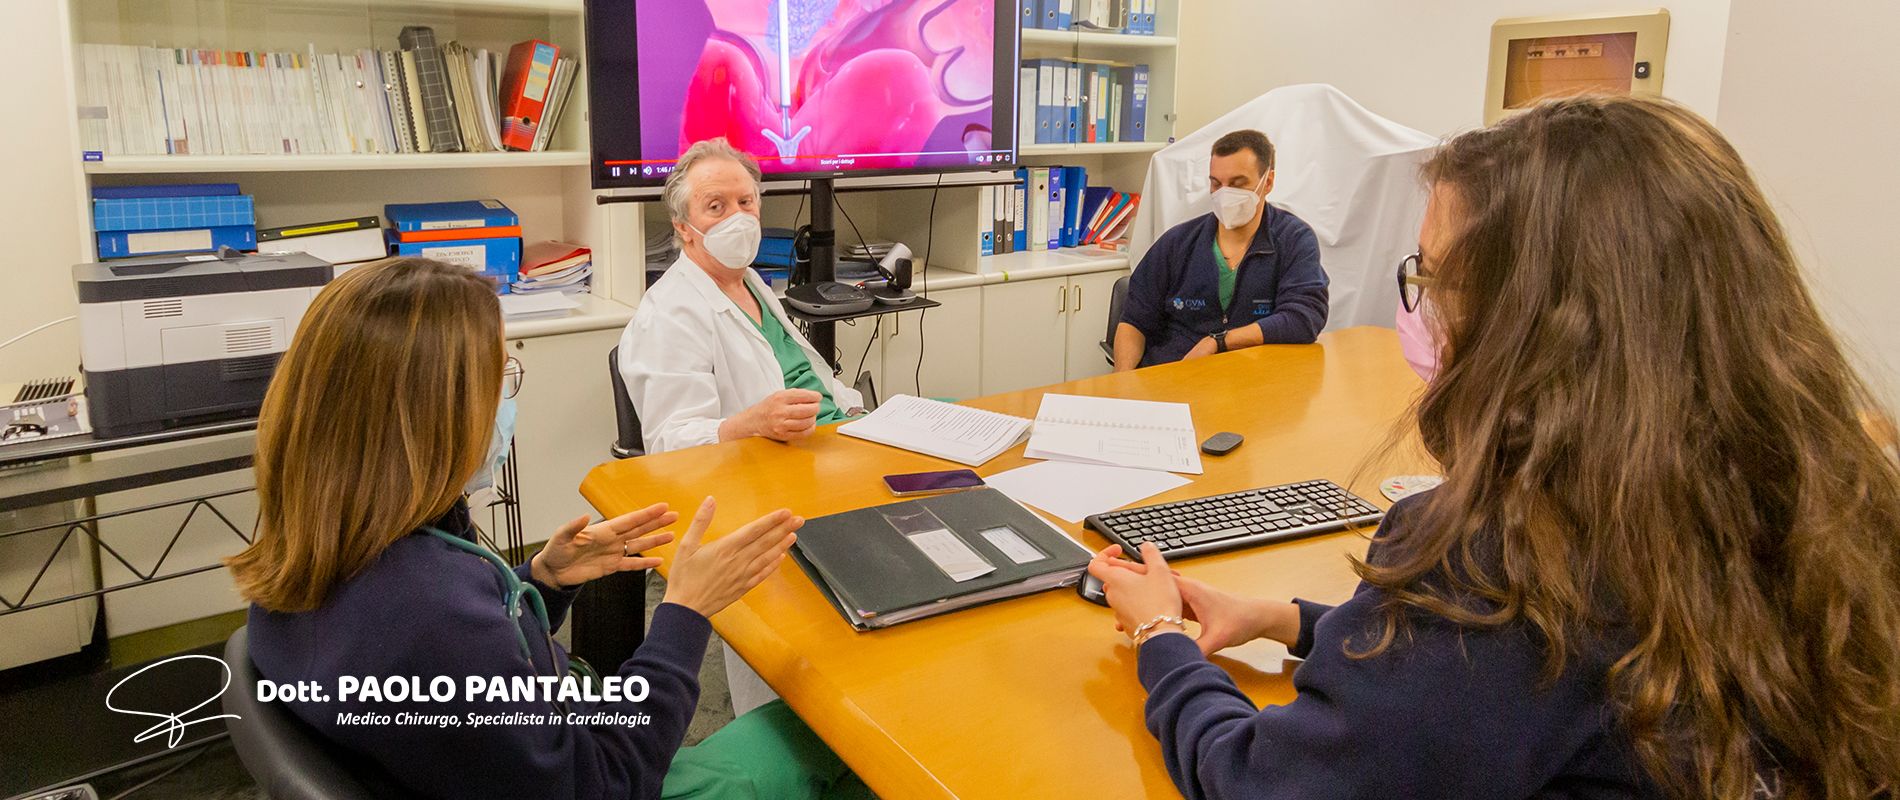 Dott. Paolo Pantaleo - Chirurgo Cardiologo ICLAS Rapallo Genova